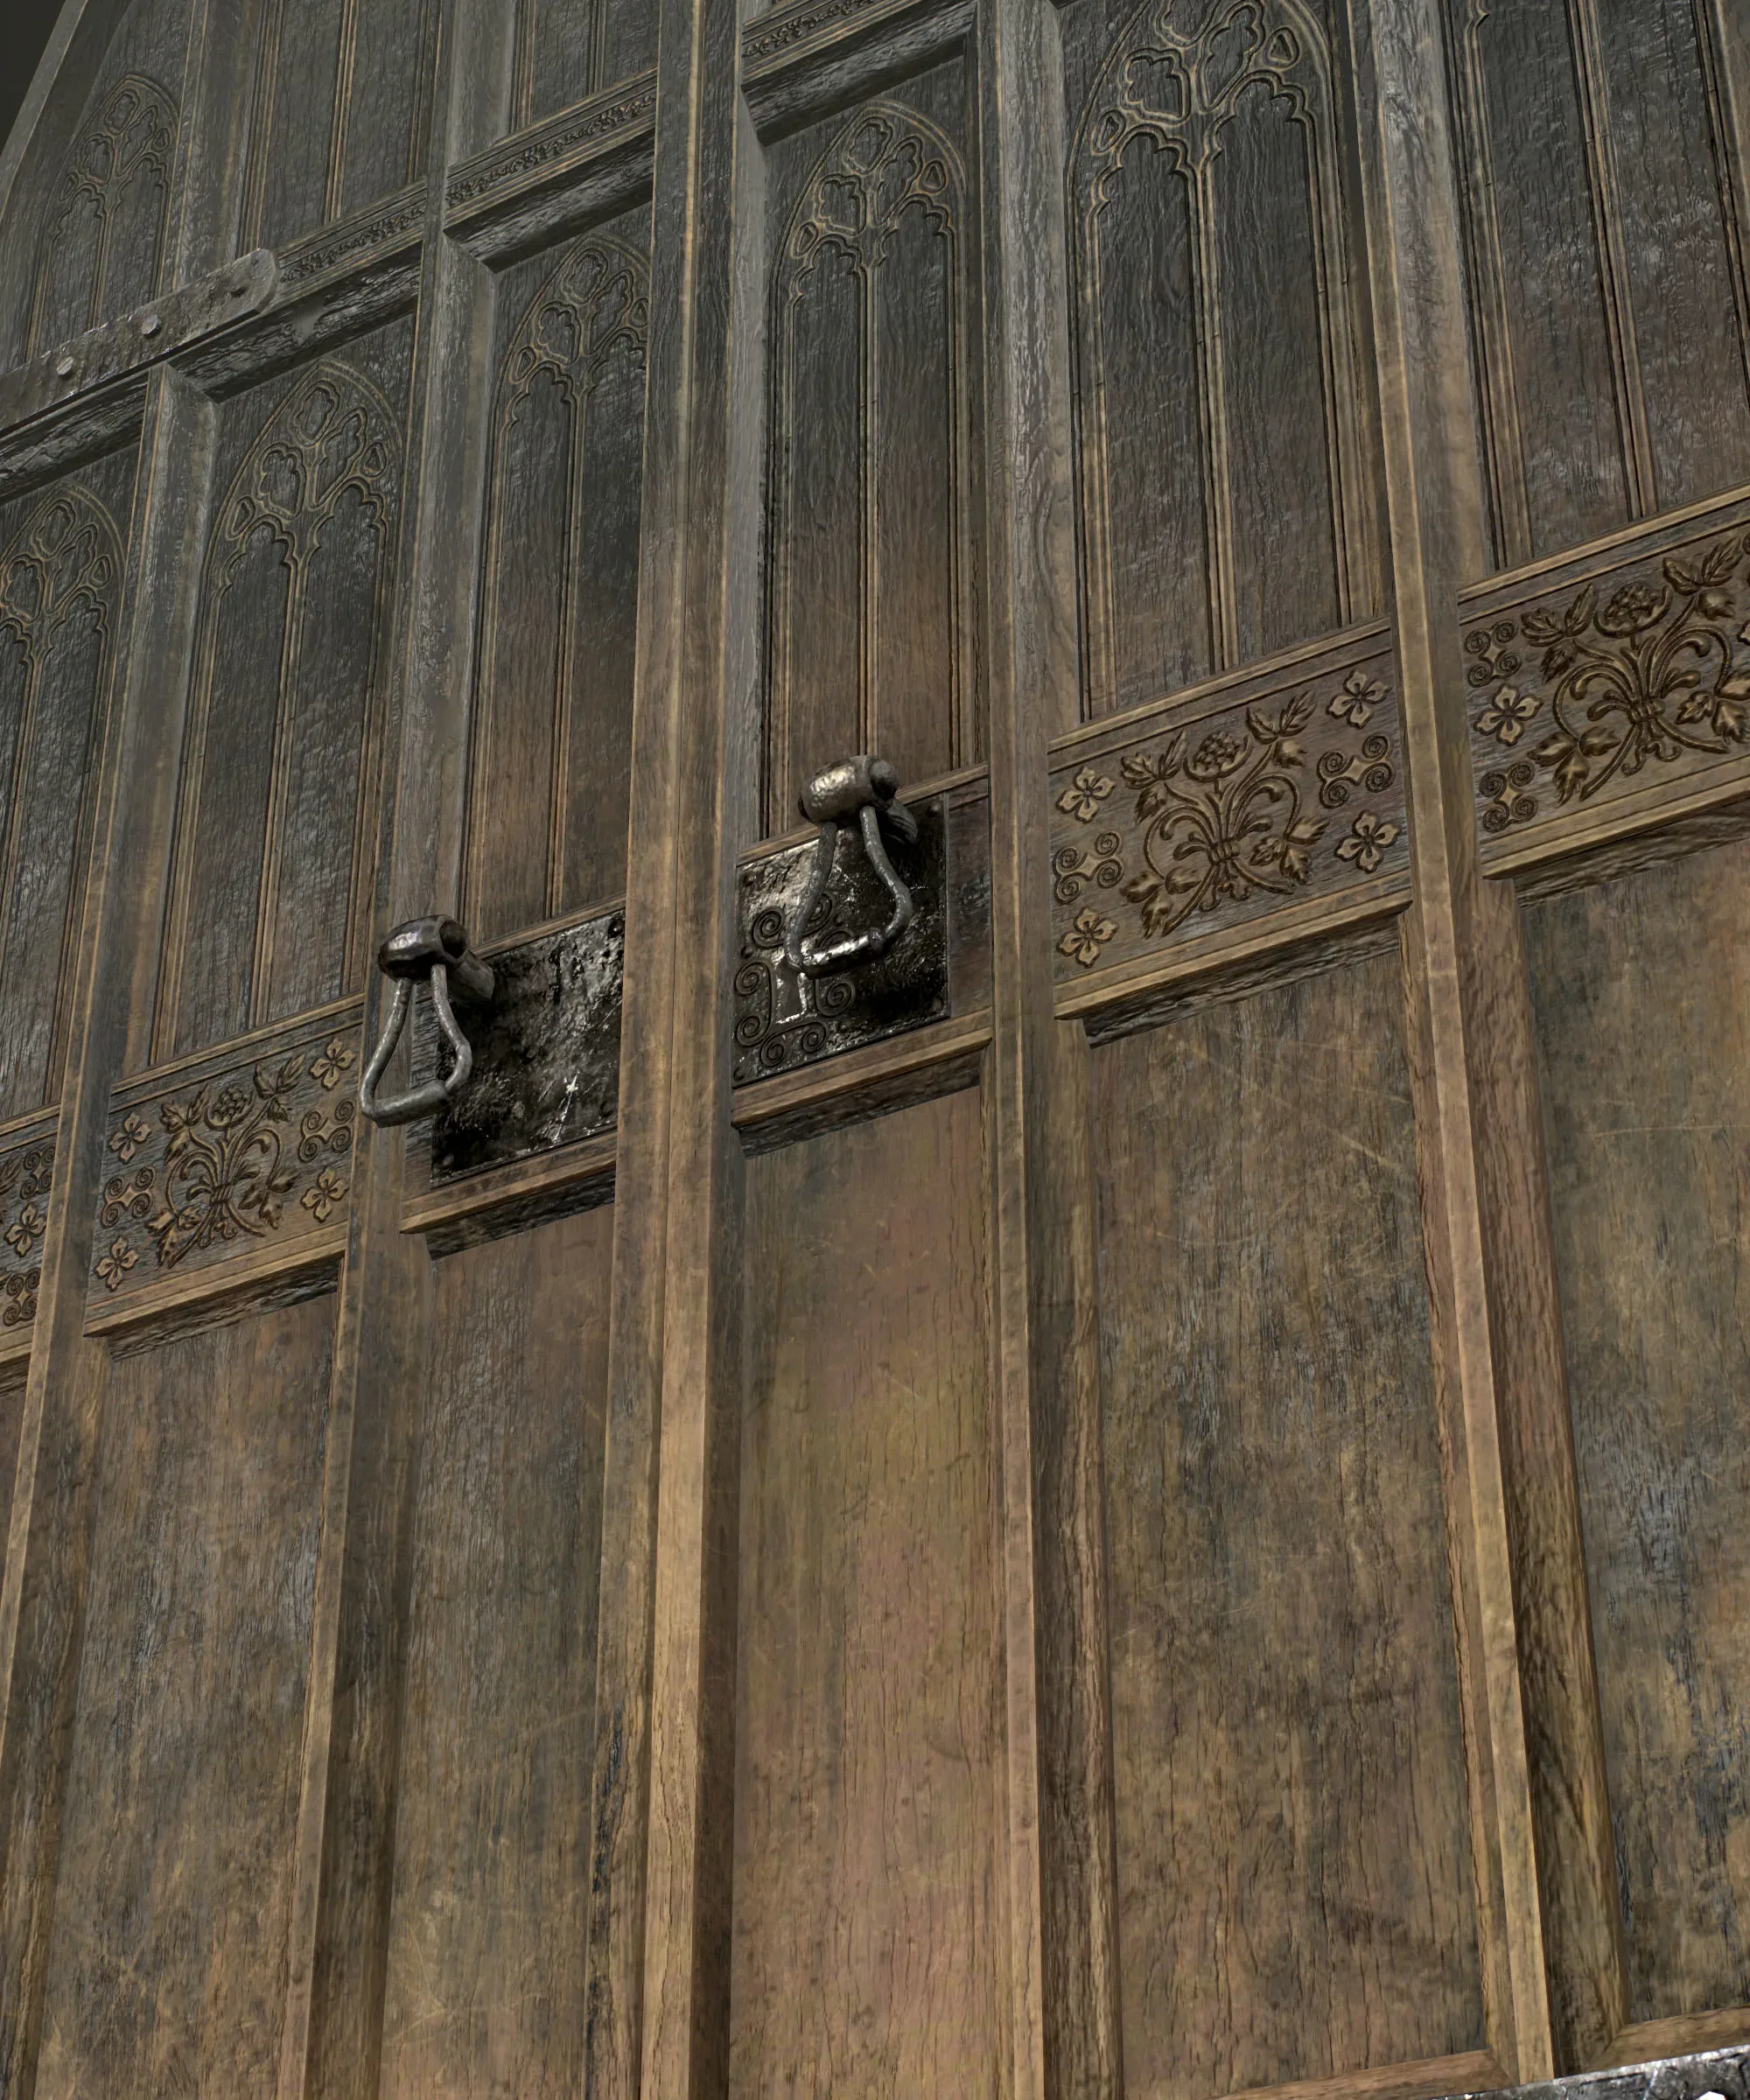 Medieval Wooden Door